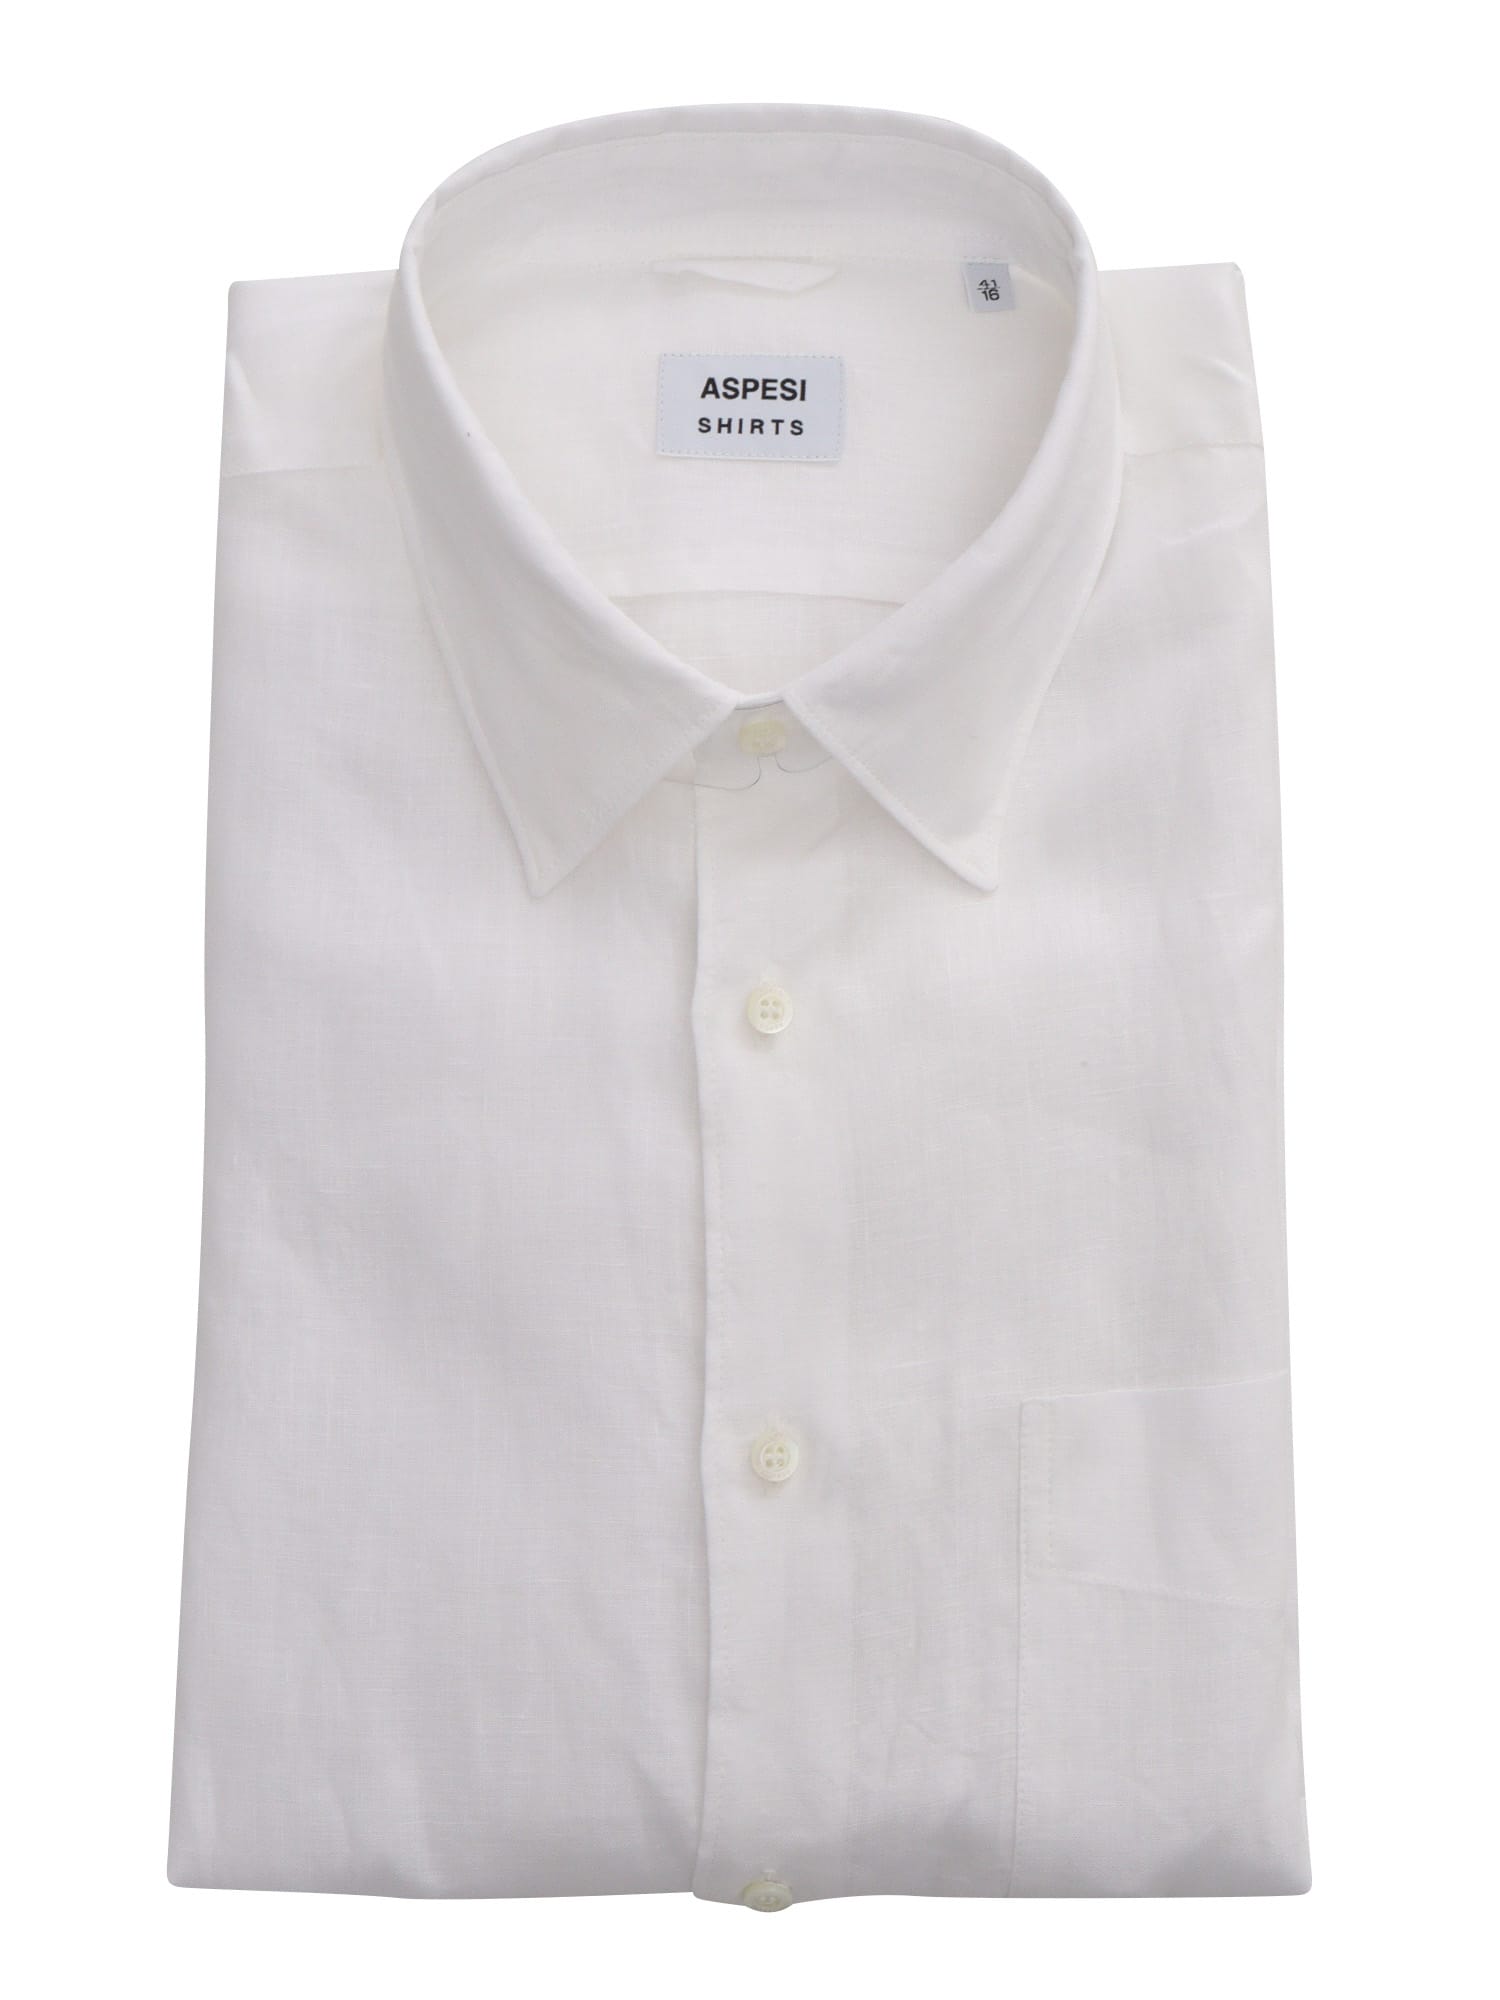 Aspesi White Shirt